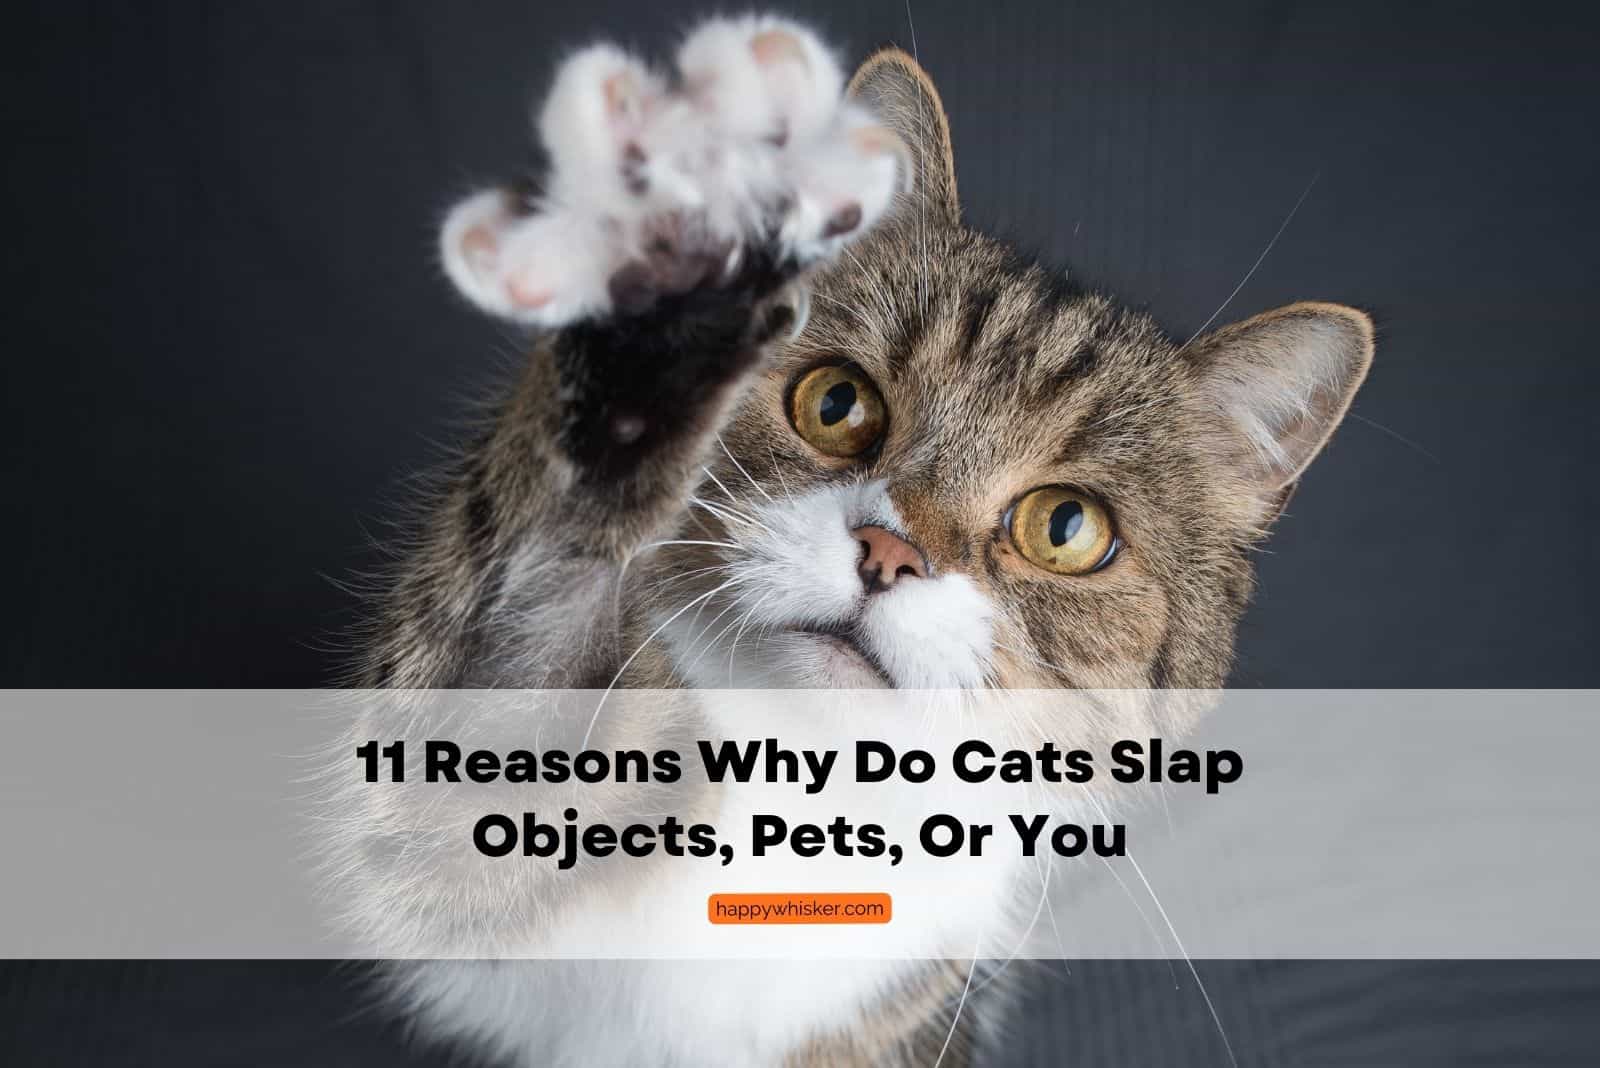 Why Do Cats Slap